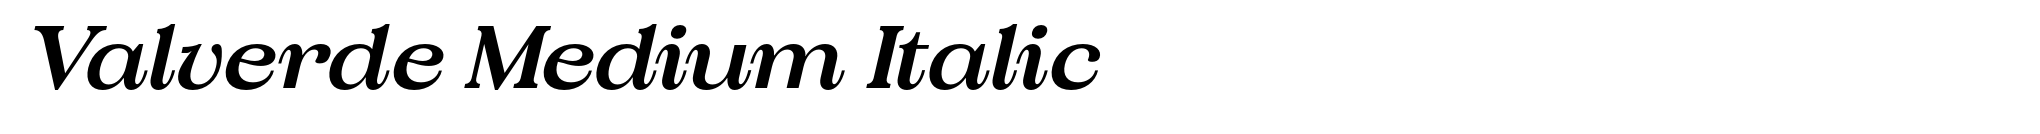 Valverde Medium Italic image